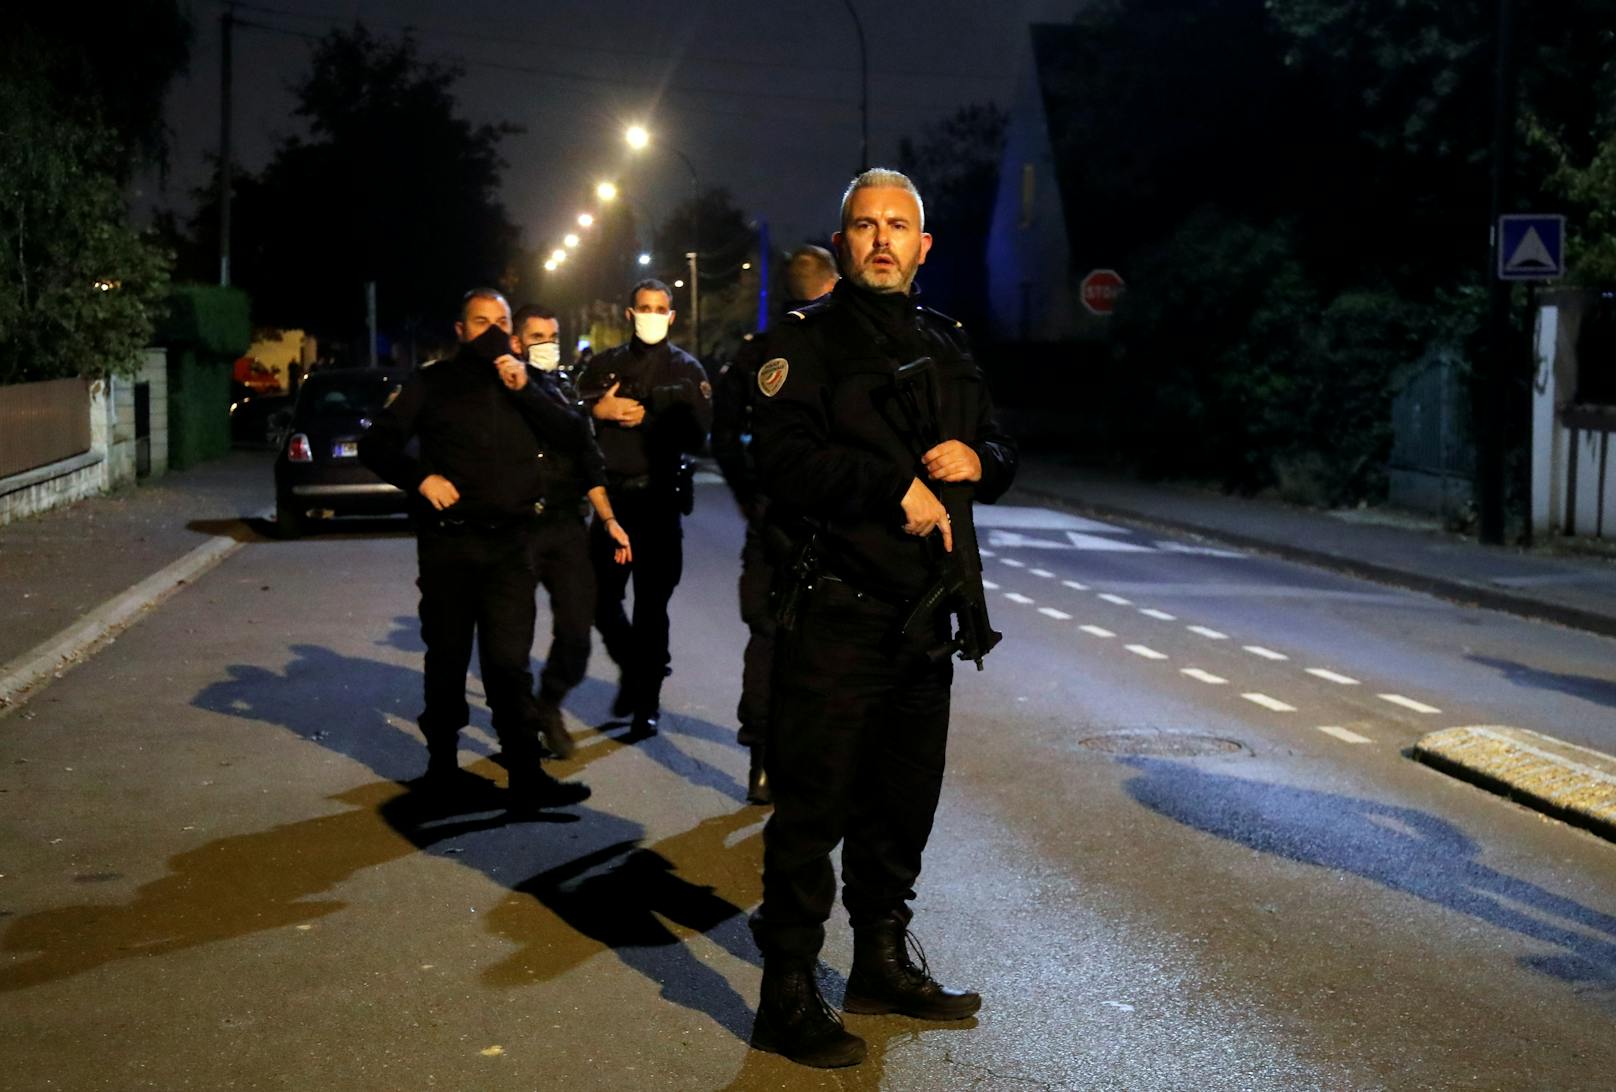 Frankreich wird seit Jahren von islamistischen Anschlägen erschüttert – dabei starben mehr als 250 Menschen.